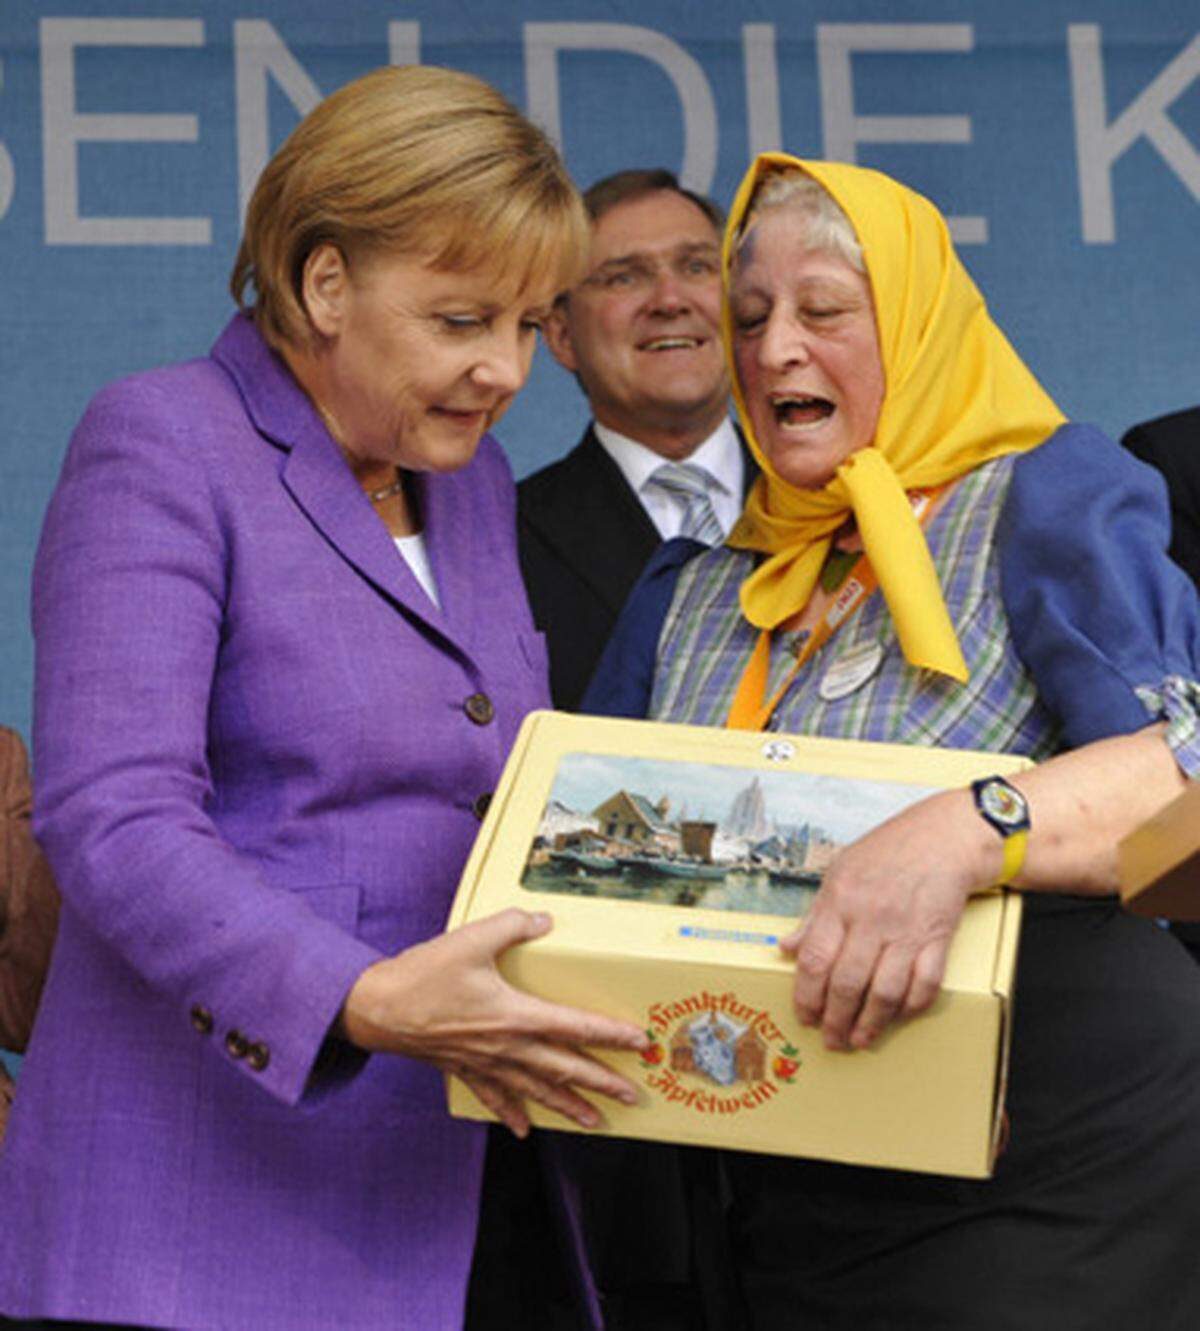 Sonst teilen die Politiker Wahlsgeschenke aus - ab und zu ist es auch umgekehrt: Angela Merkel nimmt hier eine Schachtel mit der Frankfurter Spezialität "Applewoi" entgegen.